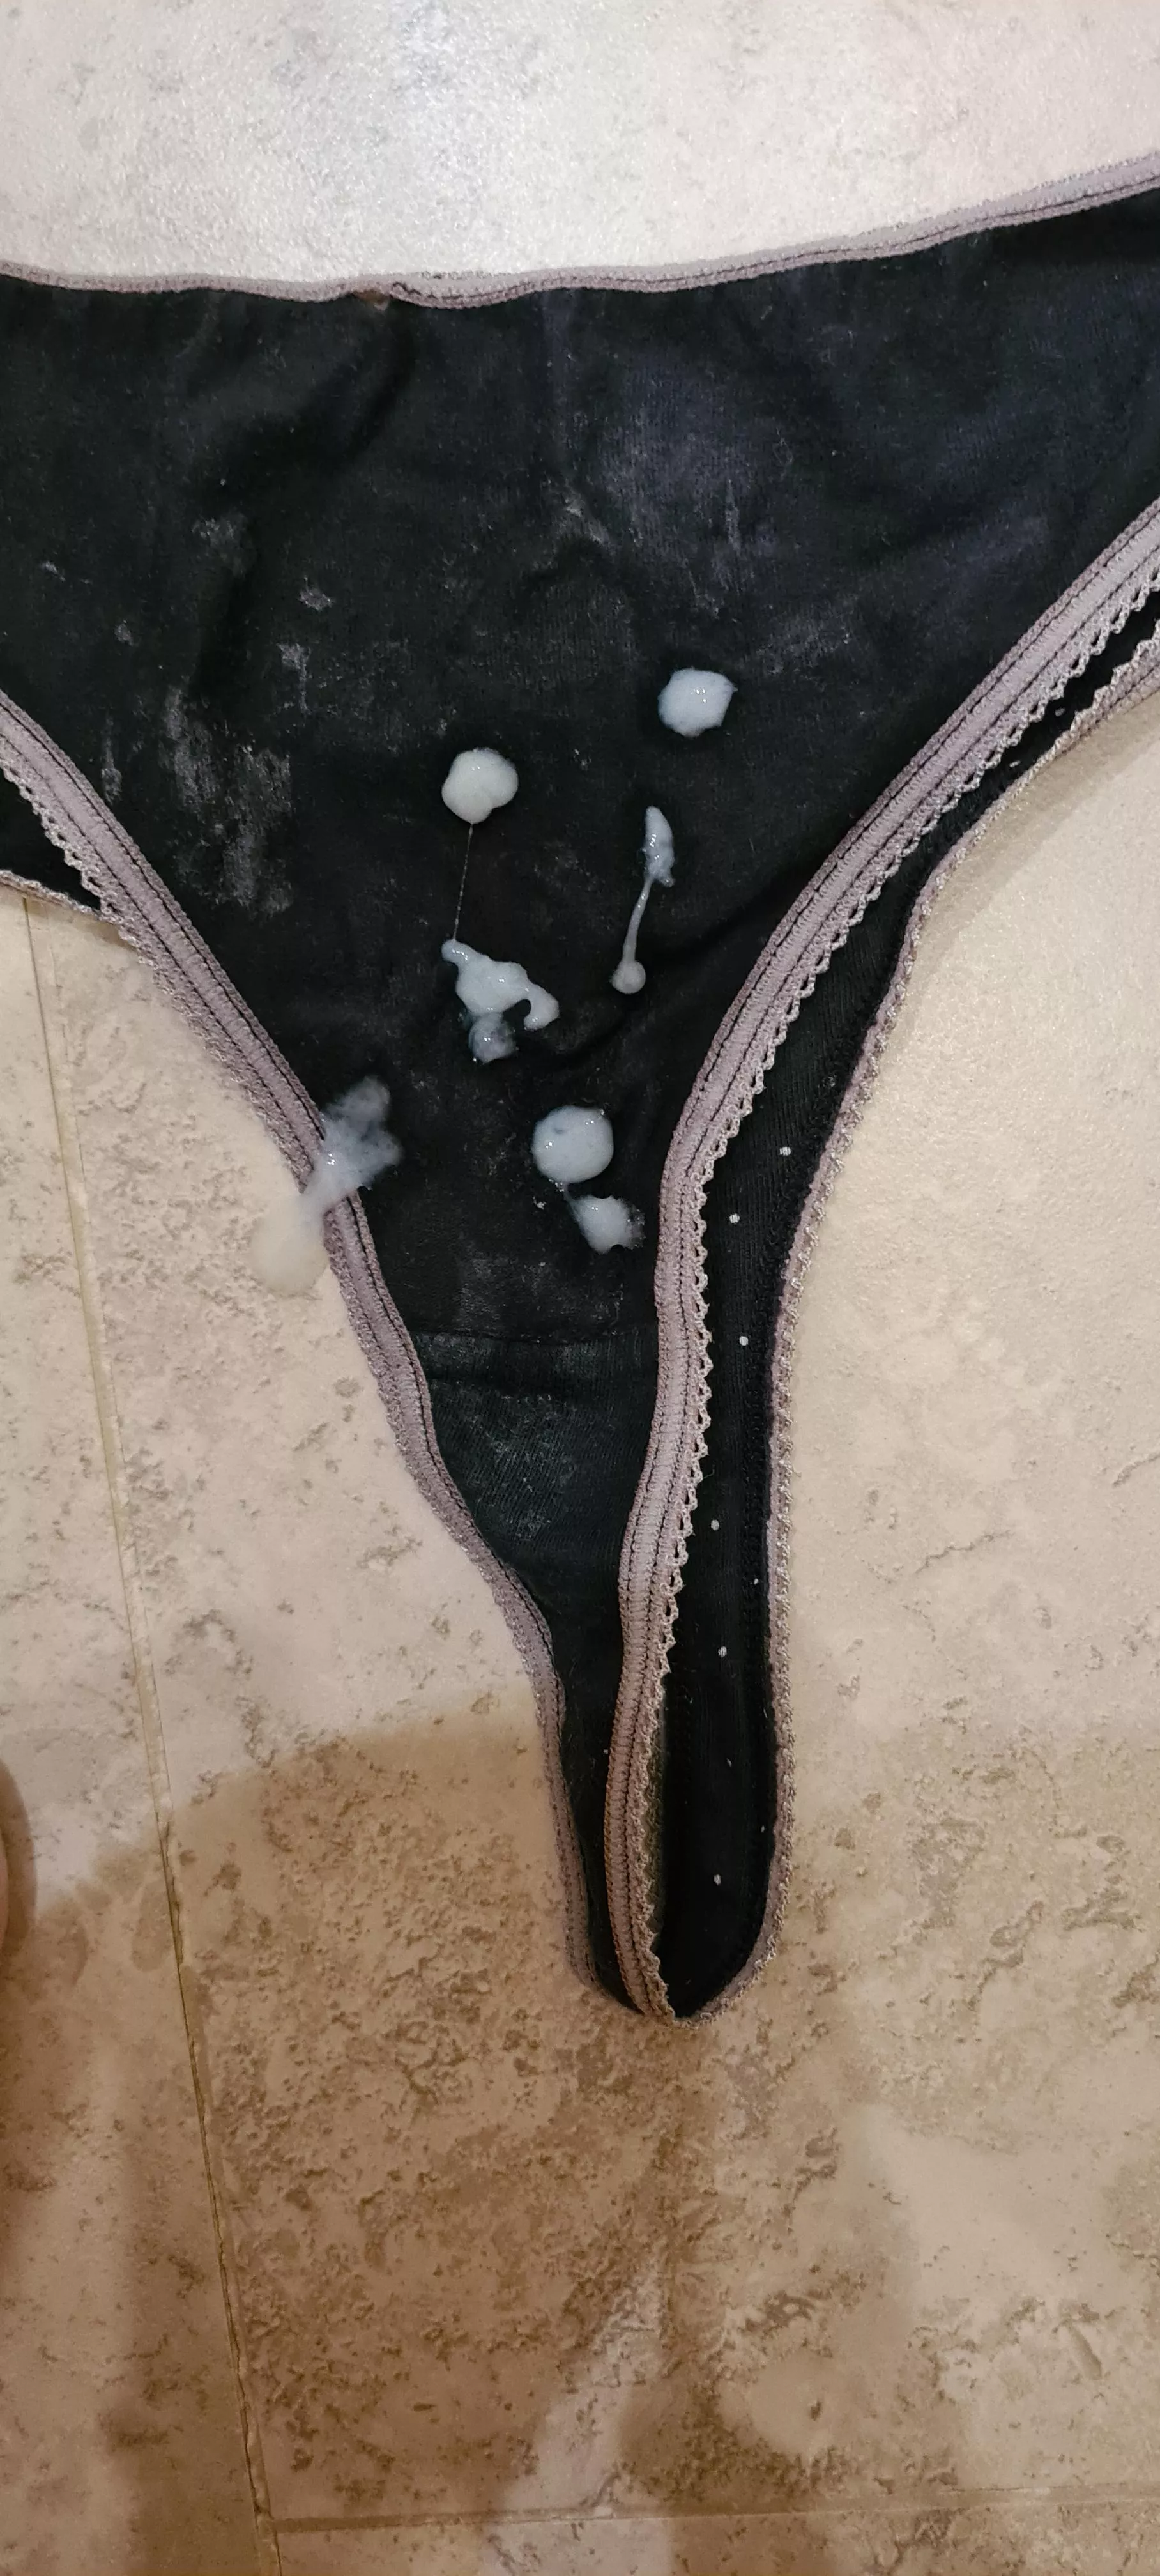 A splattering a cum on my wifes black panties! 😋 nudes cummedpanties NUDE-PICS